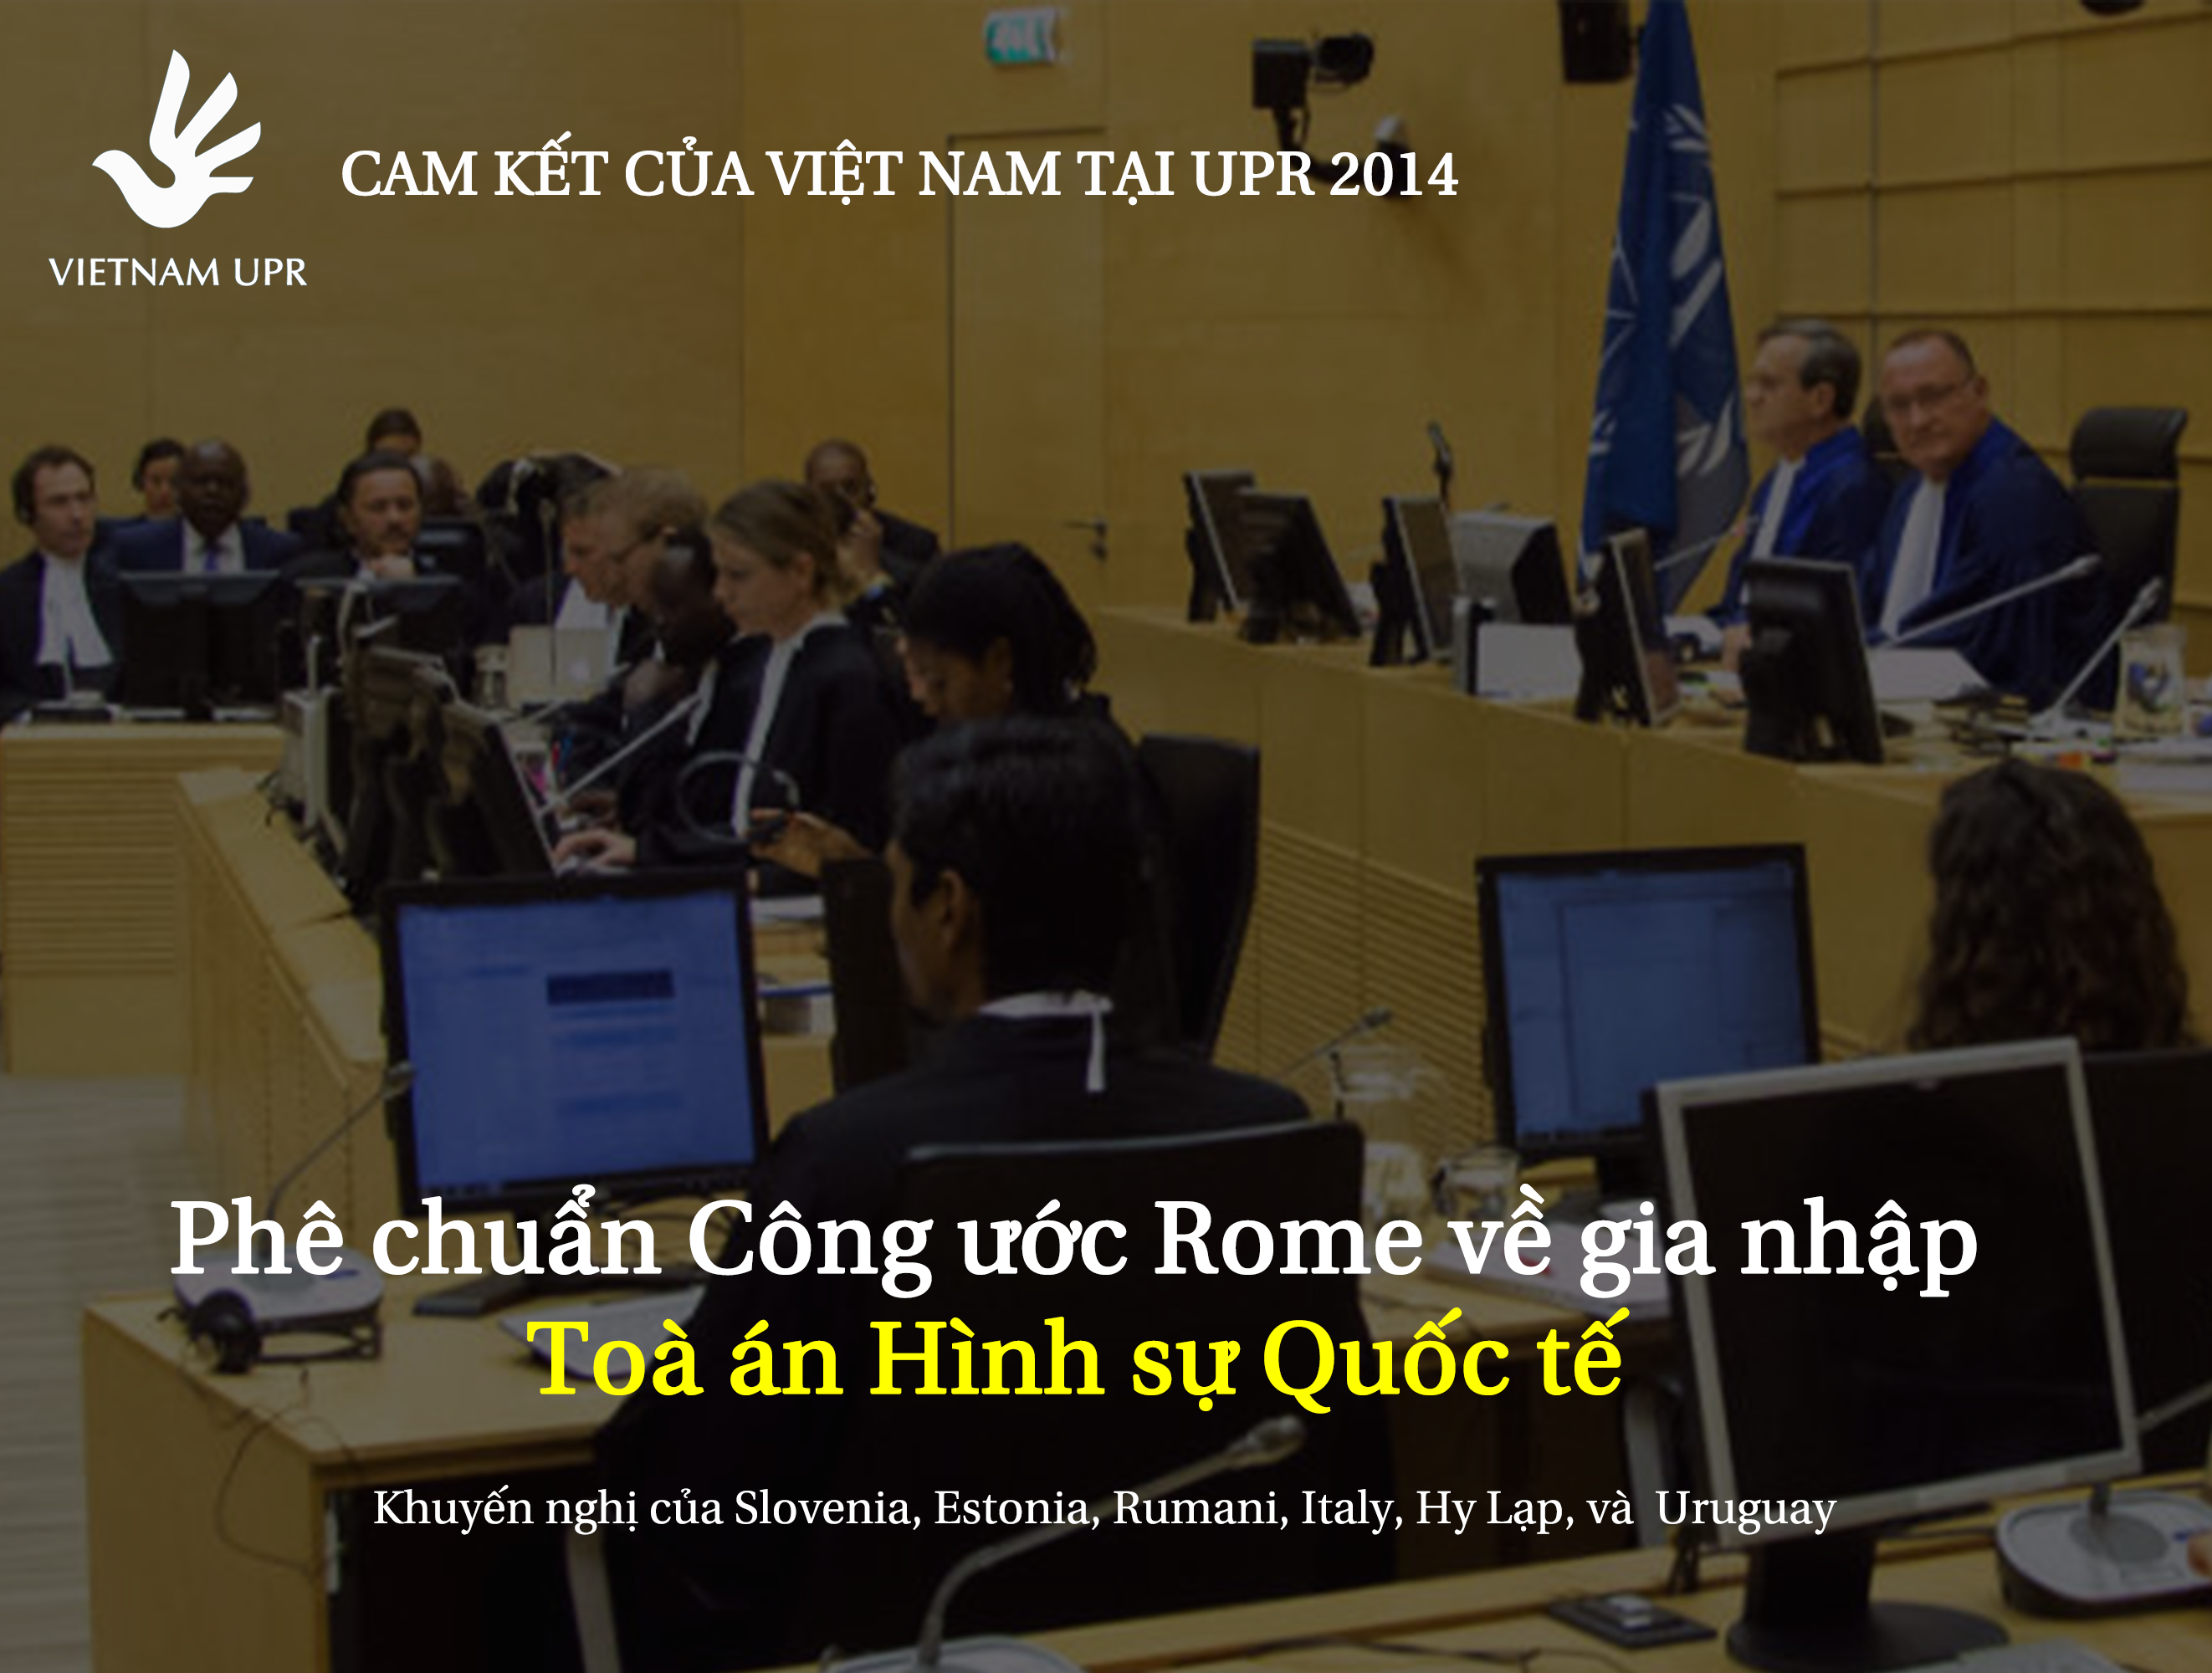 Bạn có biết Việt Nam đã phê chuẩn Công ước Rome về gia nhập Tòa án Hình sự Quốc tế tại UPR 2014 - UPR_KN_5